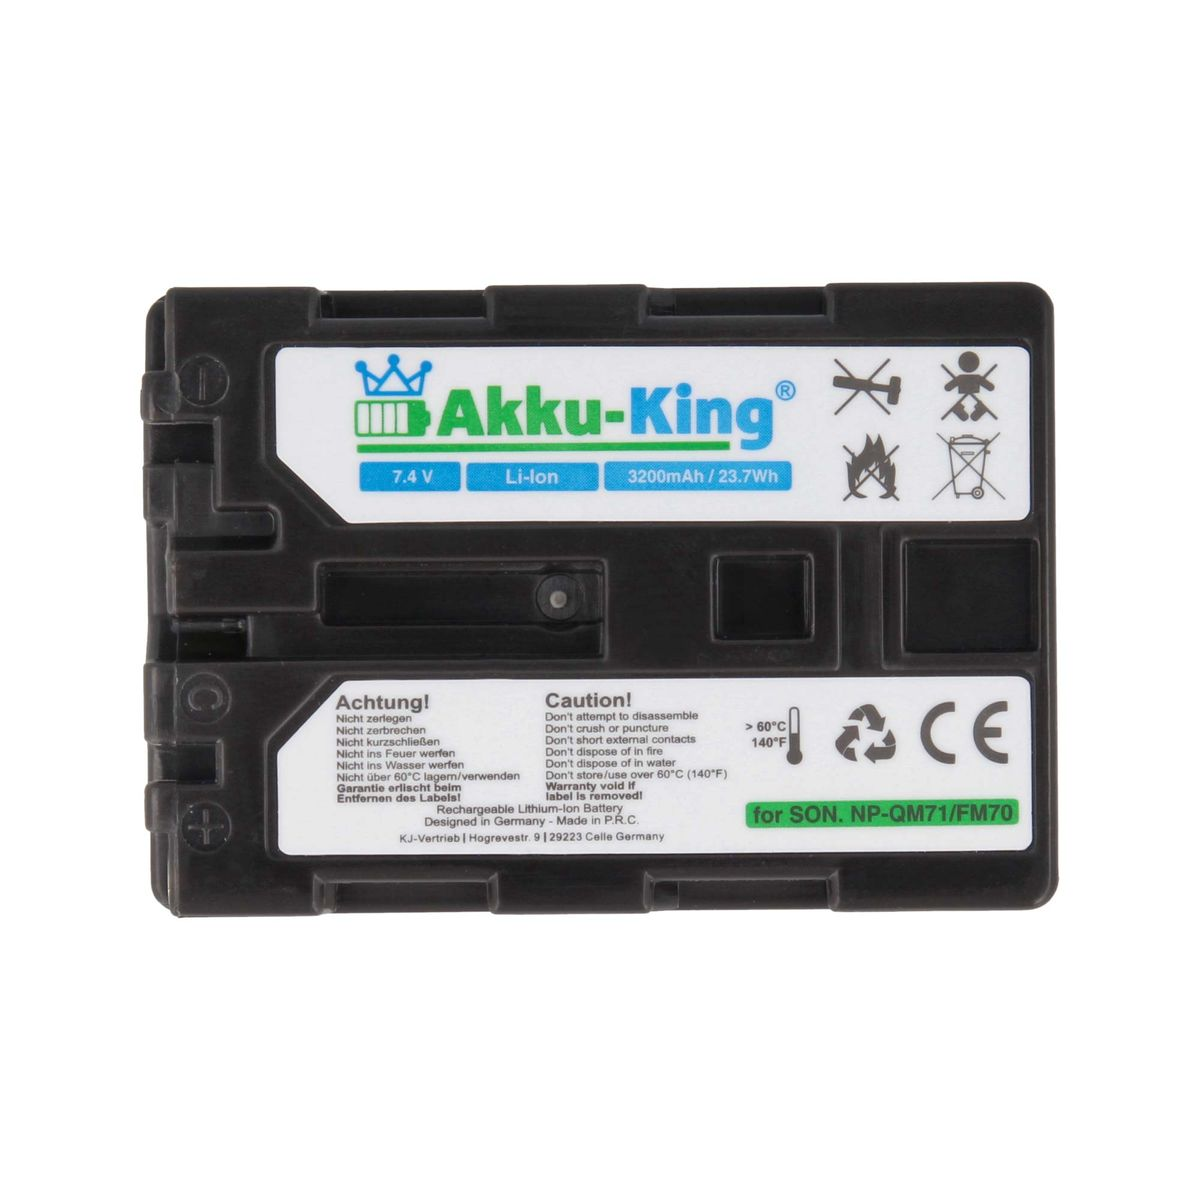 AKKU-KING Akku Sony 7.4 mit Li-Ion NP-QM51 Volt, Kamera-Akku, 3200mAh kompatibel